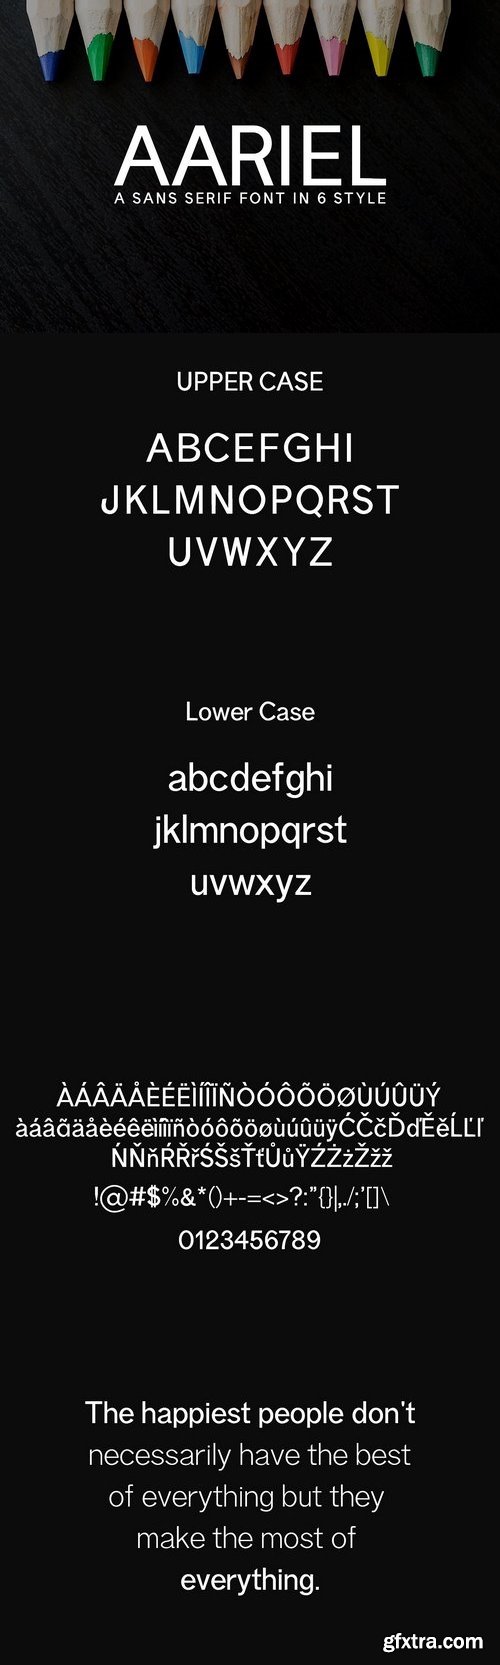 CM - Aariel Sans Serif Typeface 1435026